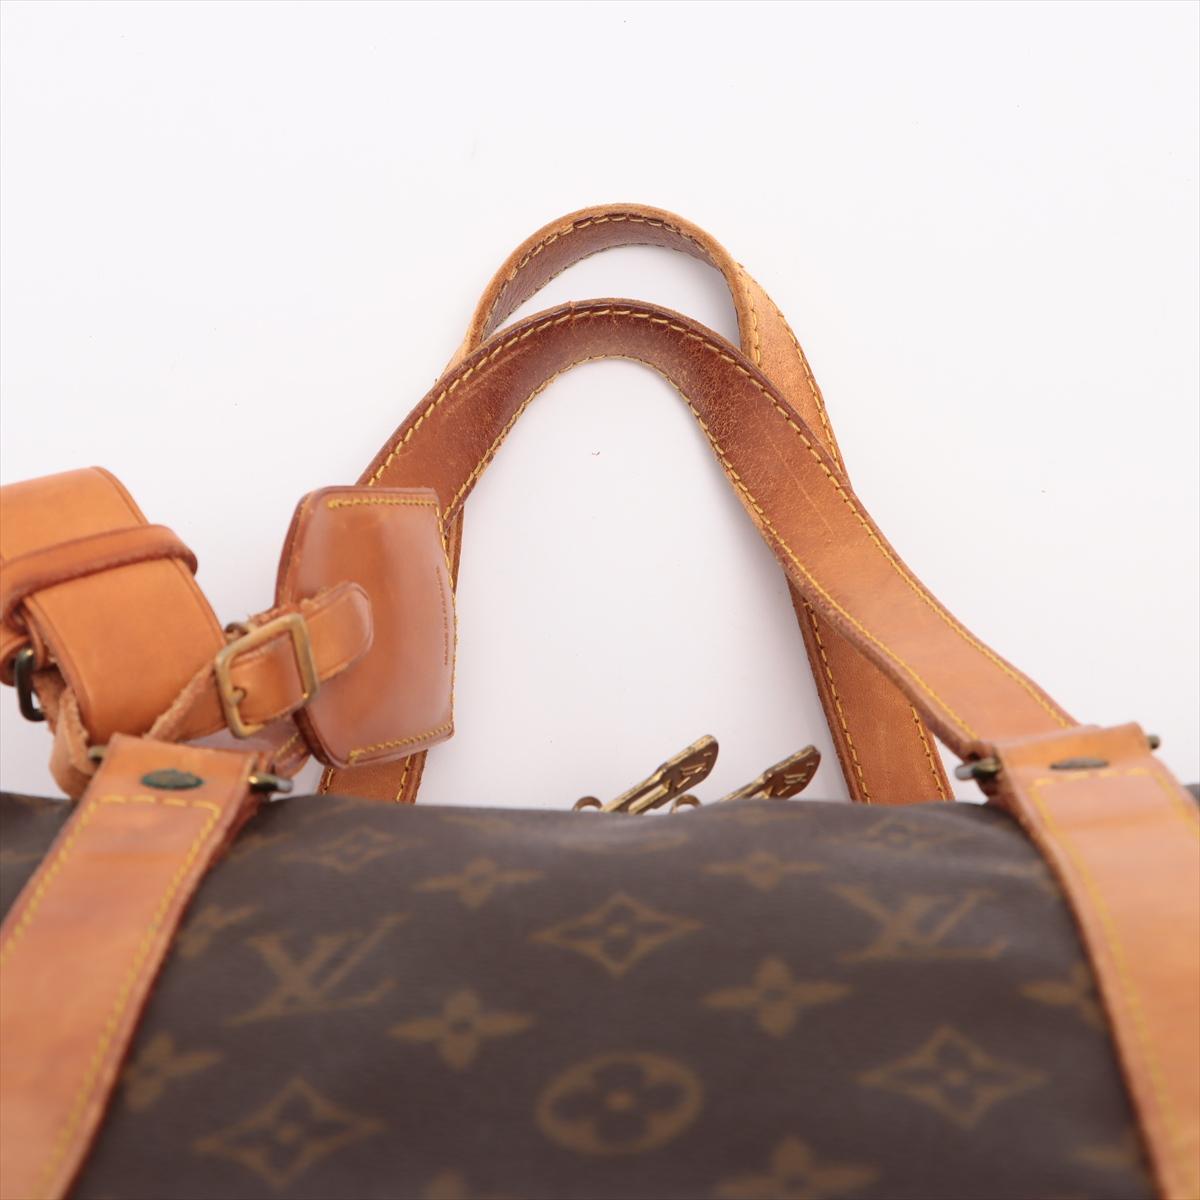 Women's Louis Vuitton Brown Monogram Canvas Leather Sac Souple 45 cm Duffle Bag